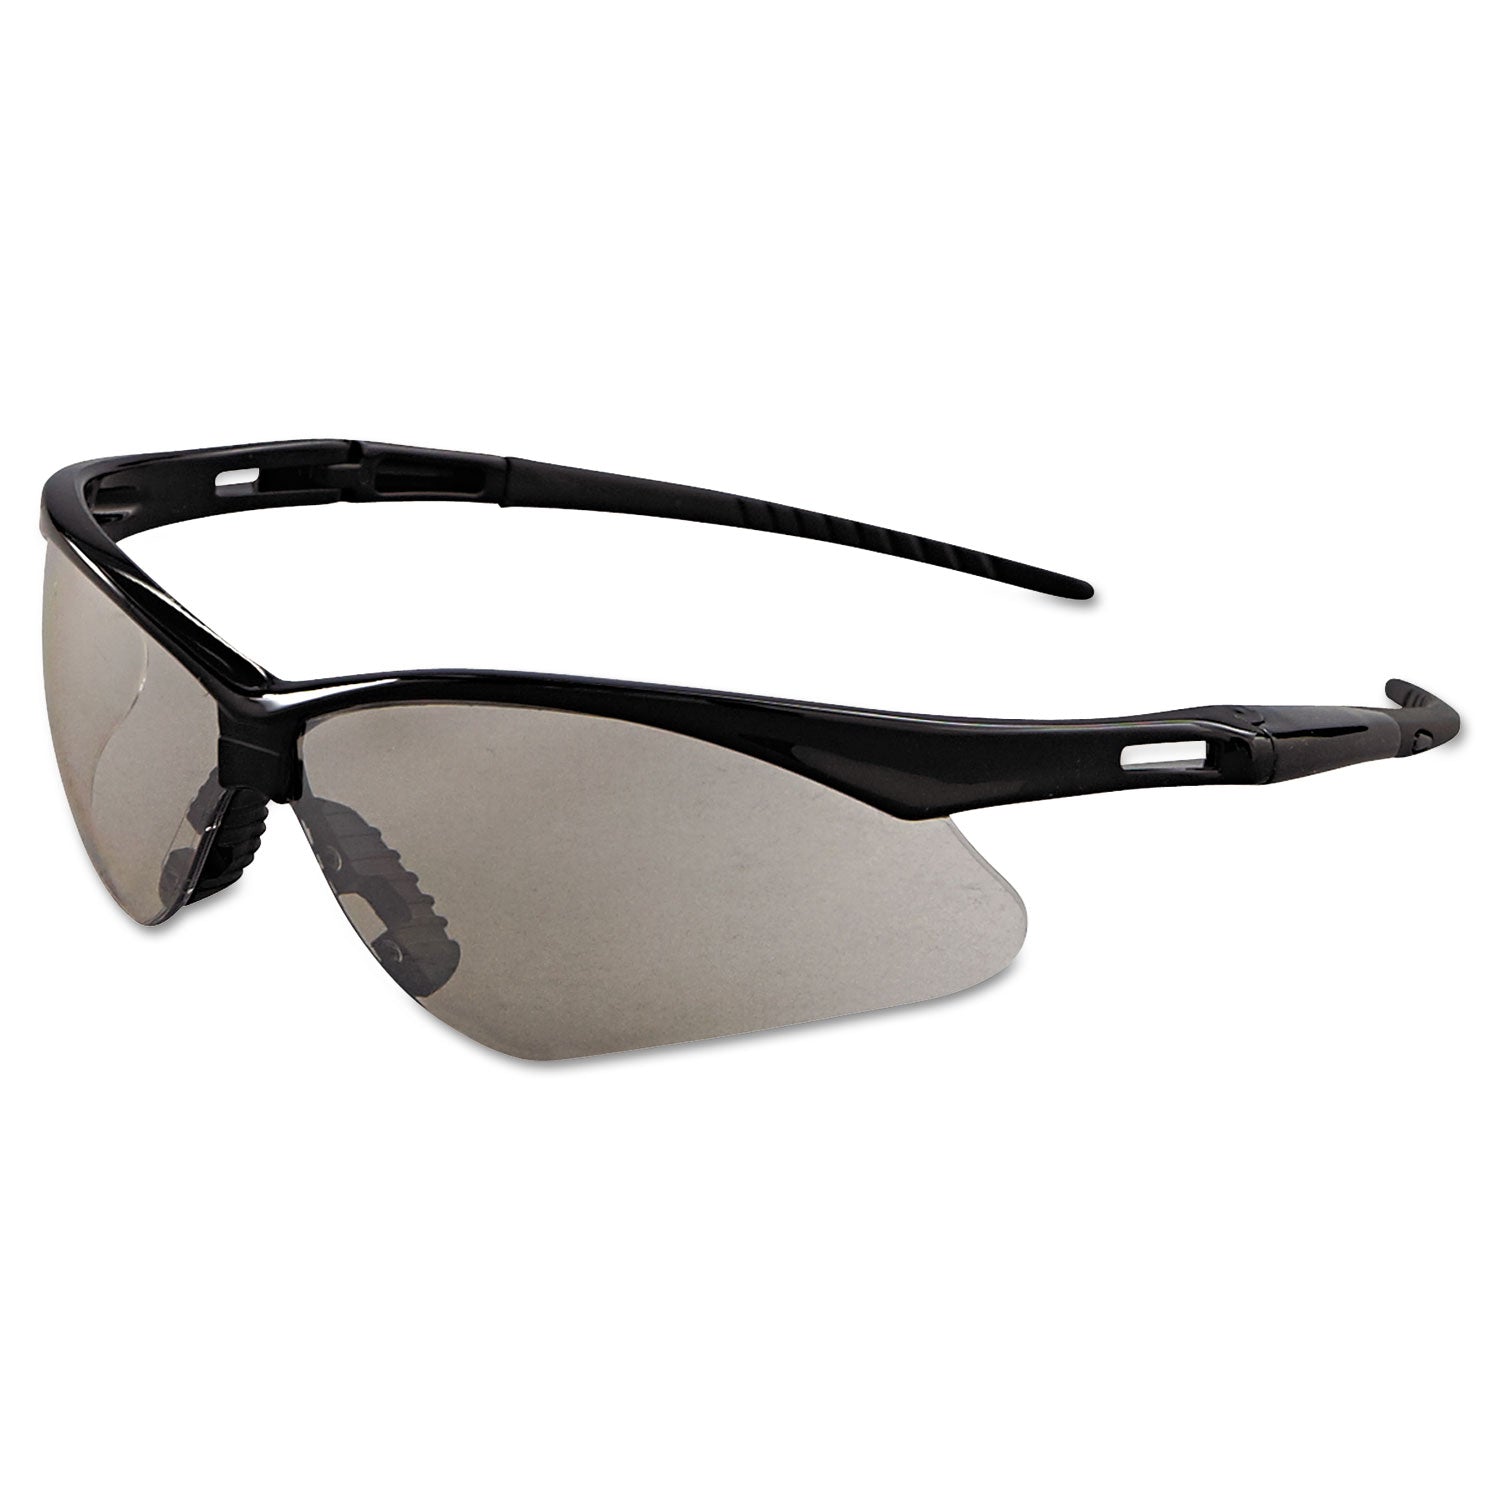 nemesis-safety-glasses-black-frame-indoor-outdoor-lens_kcc25685 - 1